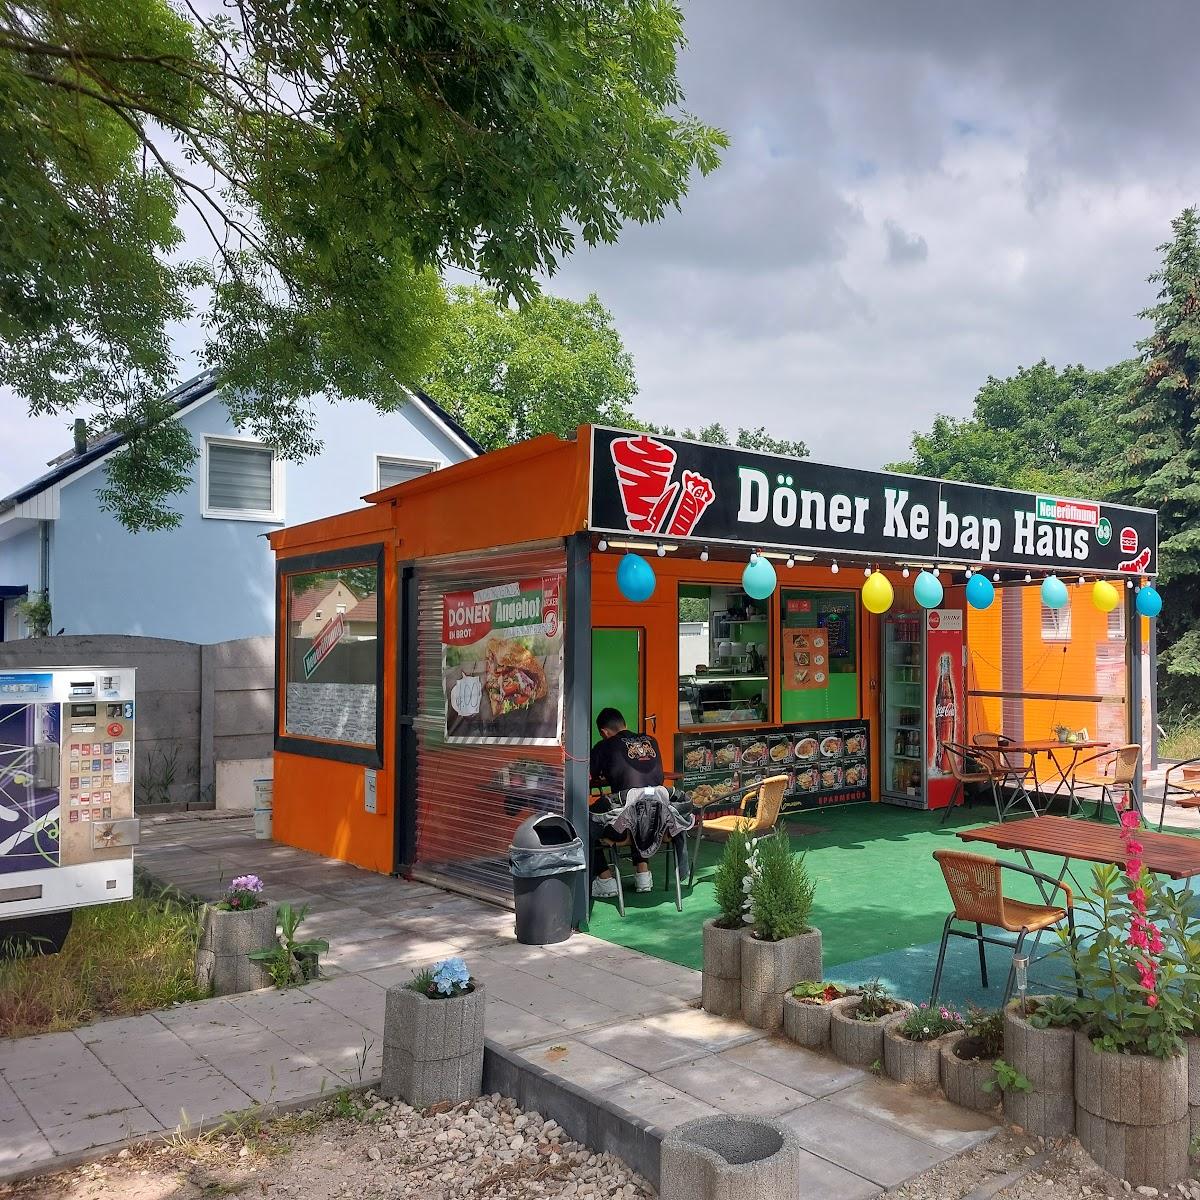 Restaurant "Döner Kebap Haus 63" in Zossen